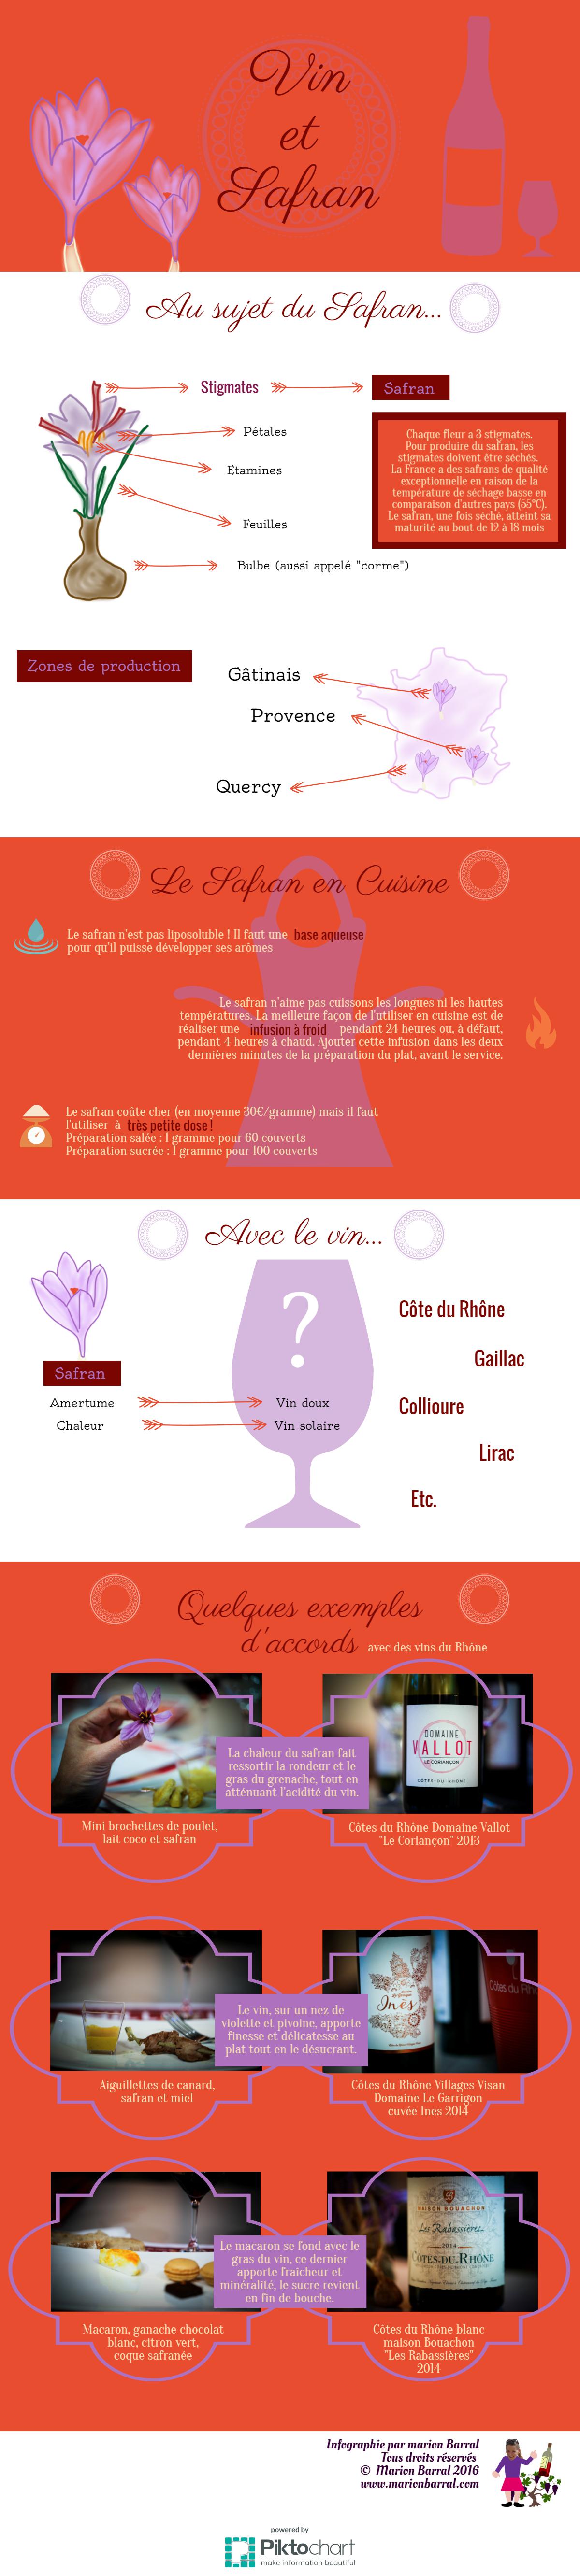 infographie safran et vin marion barral